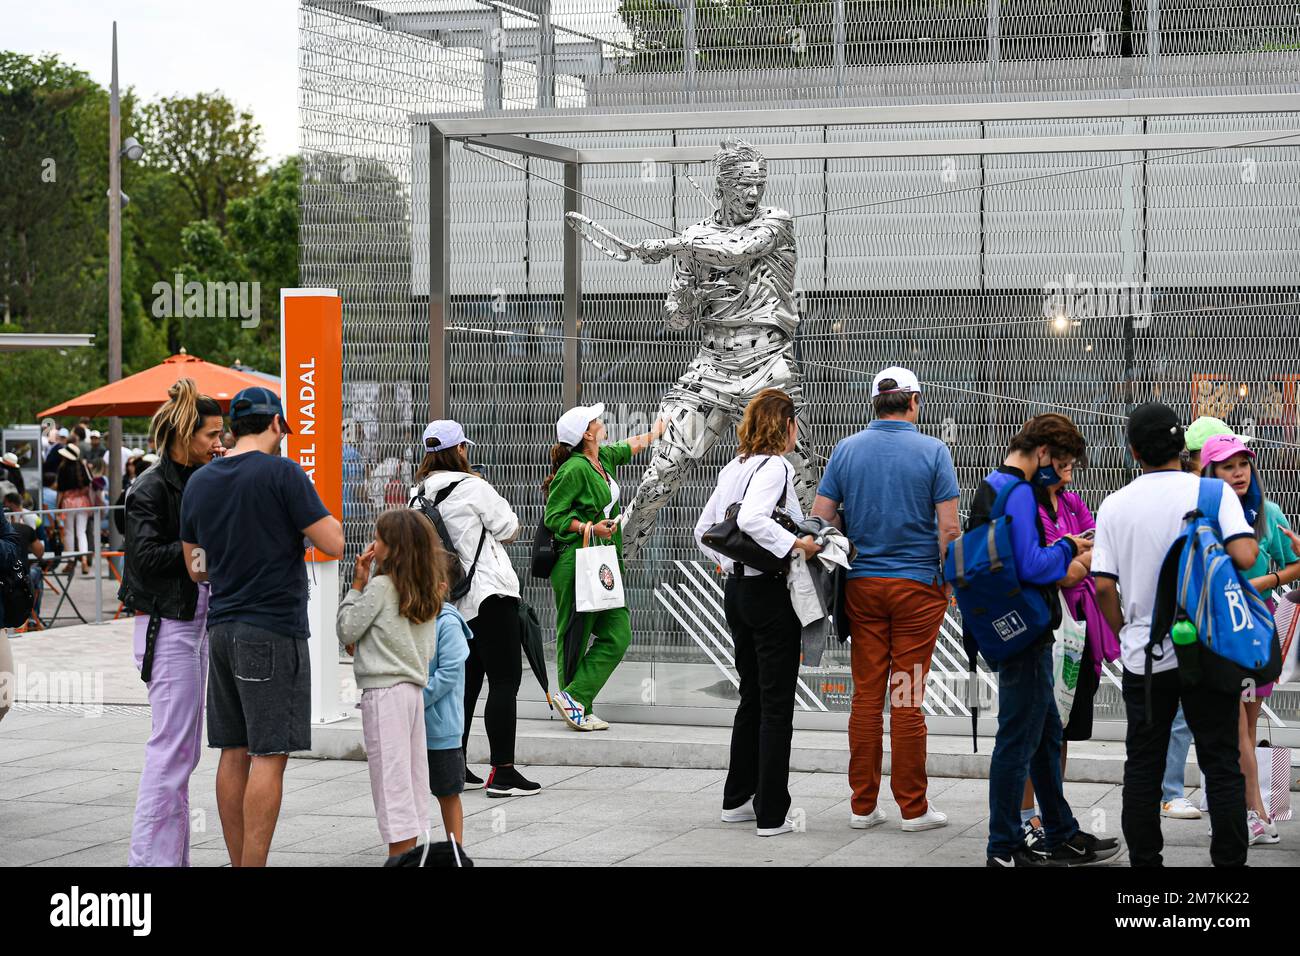 Statue, die Rafael Nadal vom Bildhauer Jordi Díez Fernandez repräsentiert, auf dem Weg zu Roland Garros, dem Grand-Slam-Turnier Stockfoto